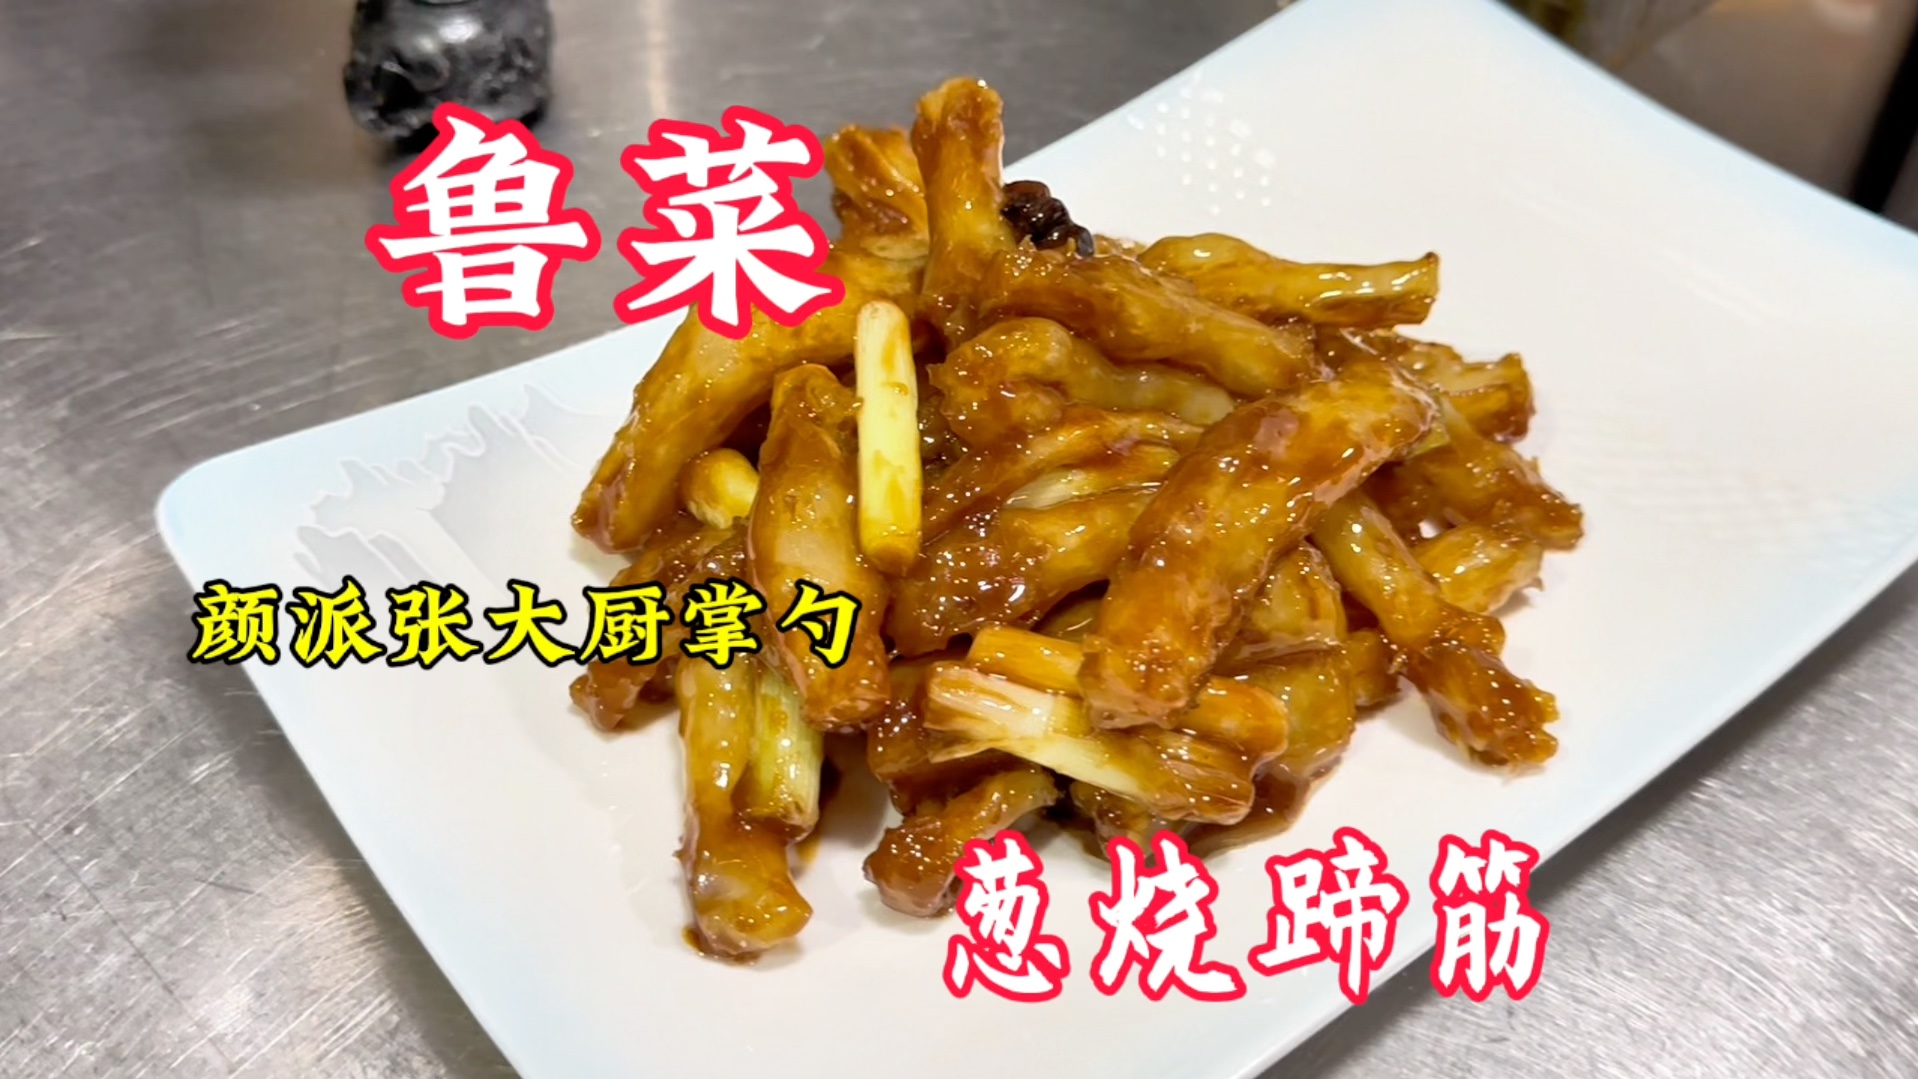 济南颜派鲁菜传承人张大厨教大家做葱烧蹄筋看起来很简单!